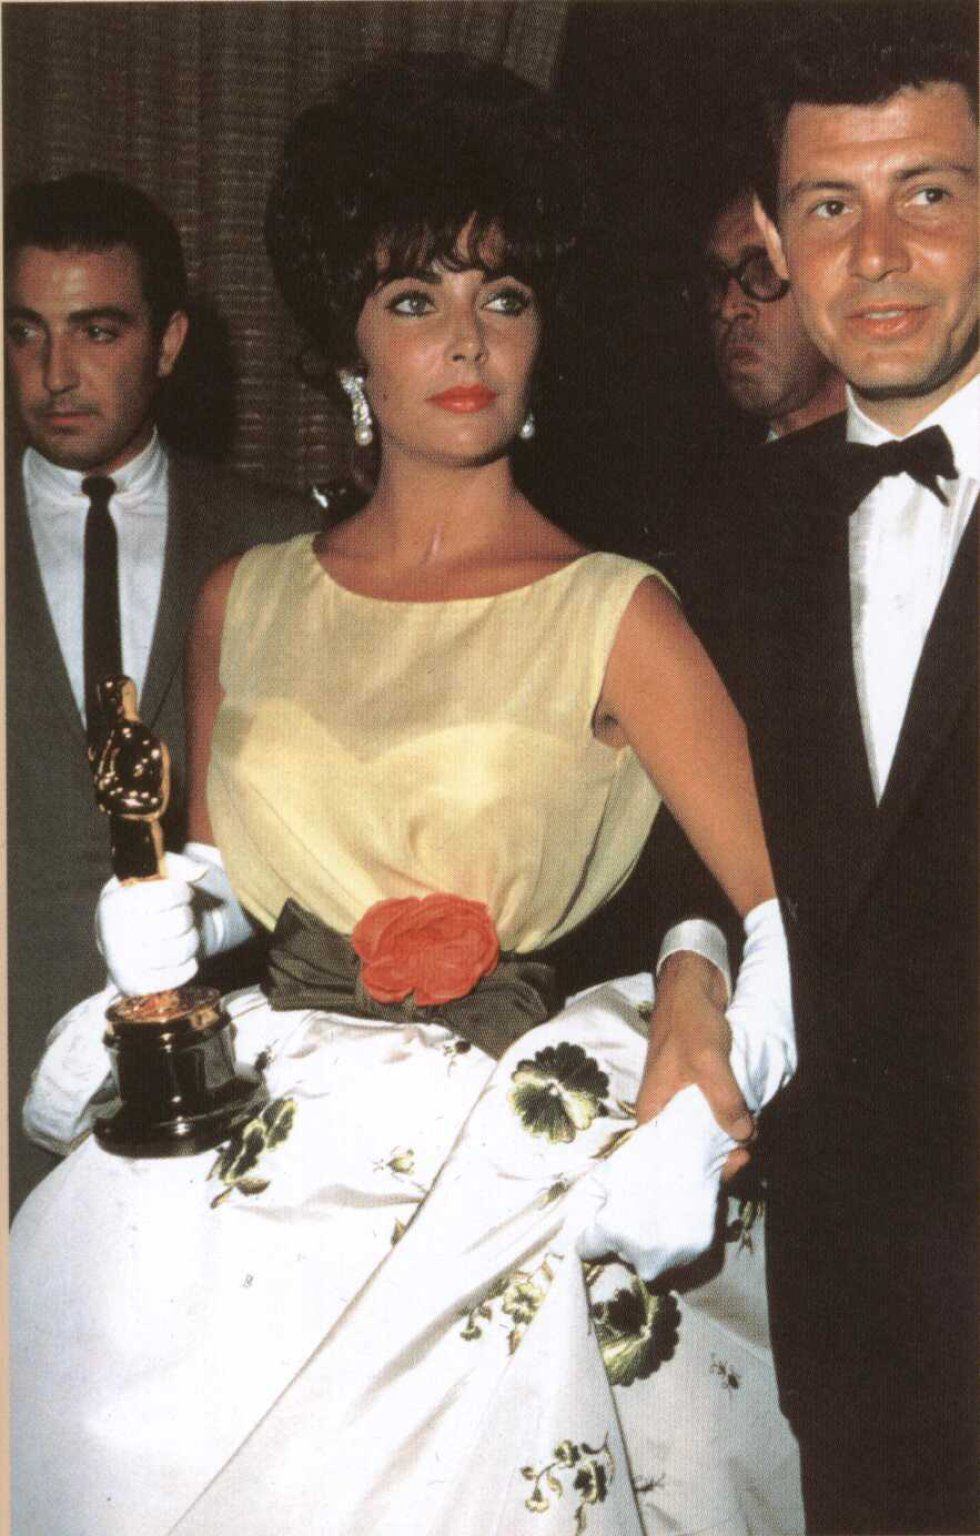 Christian Dior firmaba el modelo que Elizabeth Taylor llevó para recibir el Oscar en 1961.